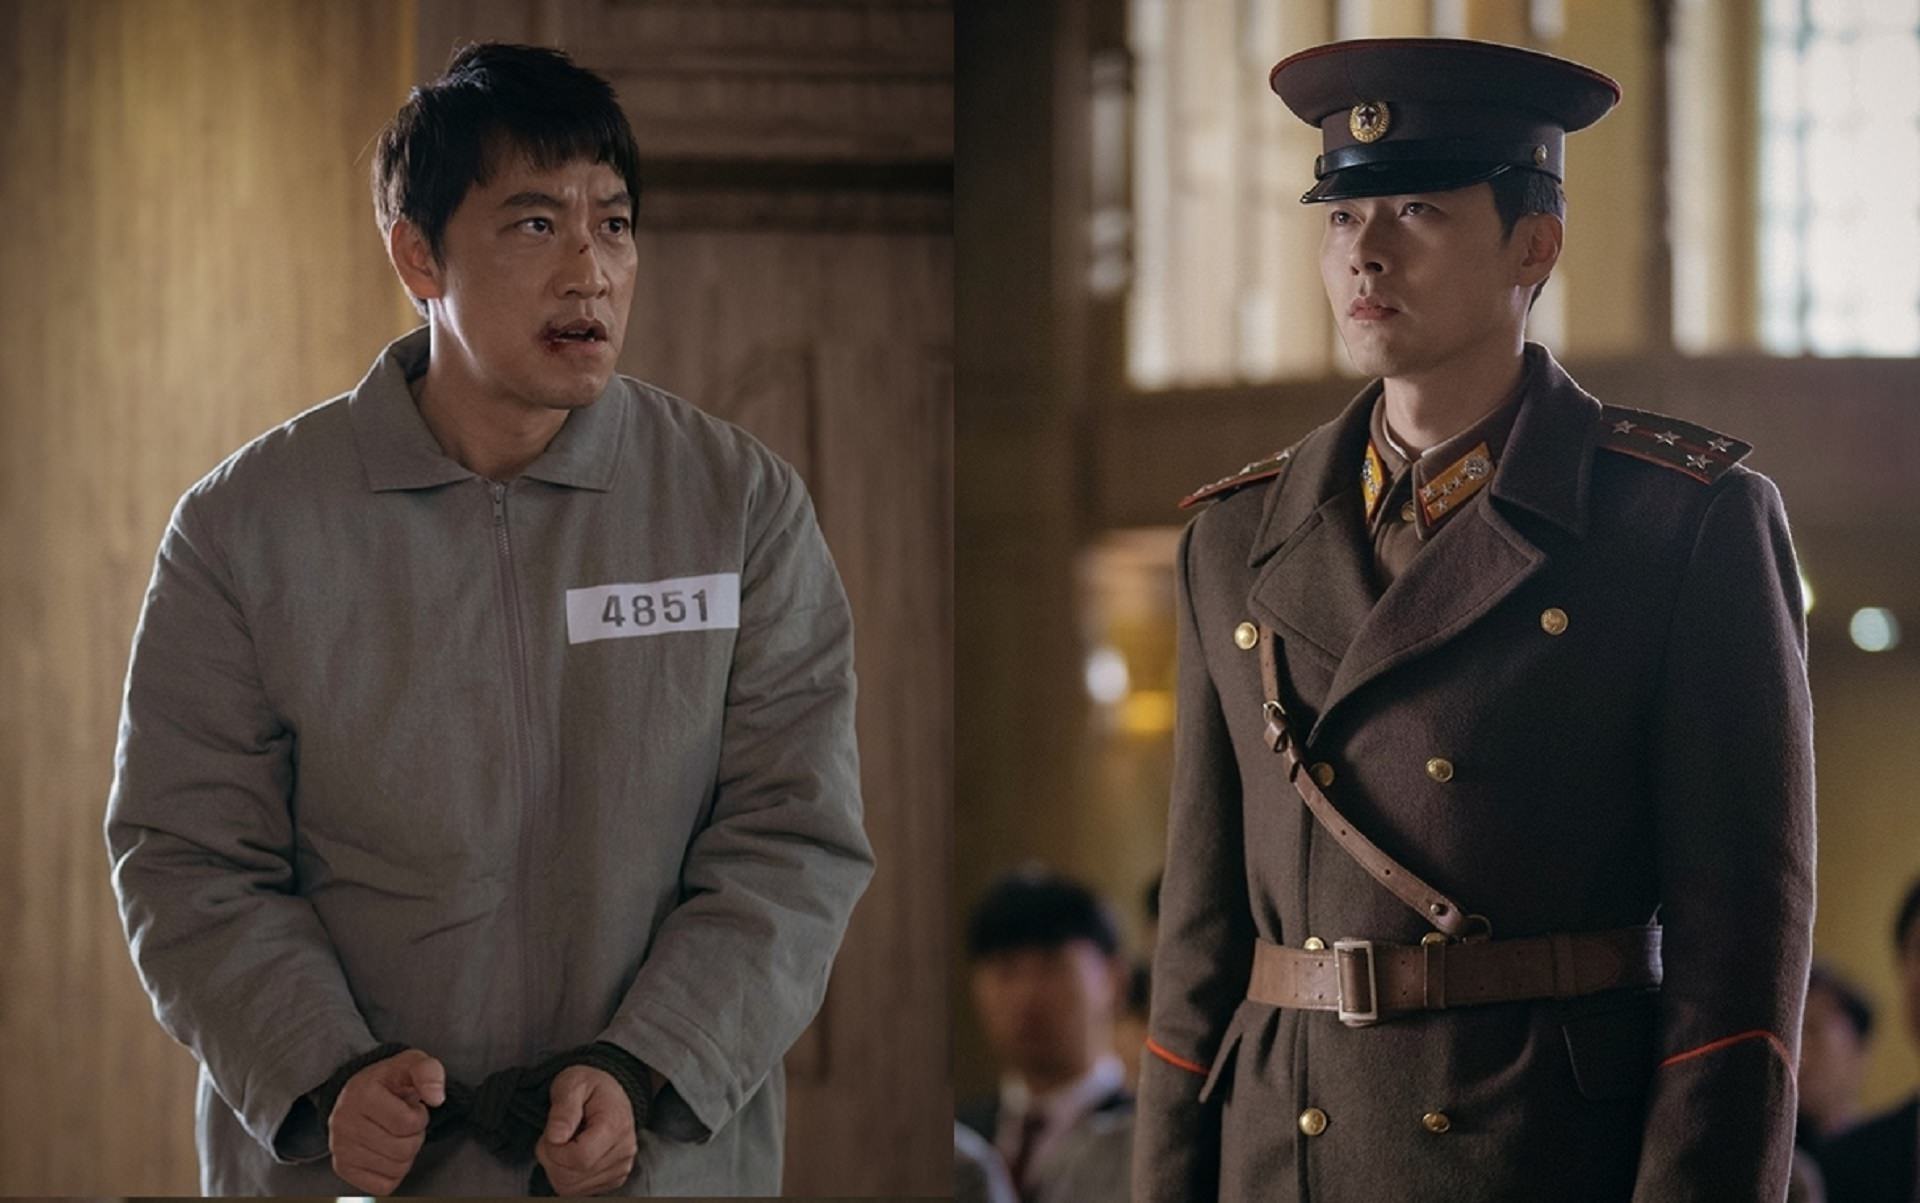 سرباز کره شمالی با بازی هیون بین در حال شهادت دادن علیه مجرم در سریال سقوط ناگهانی روی تو